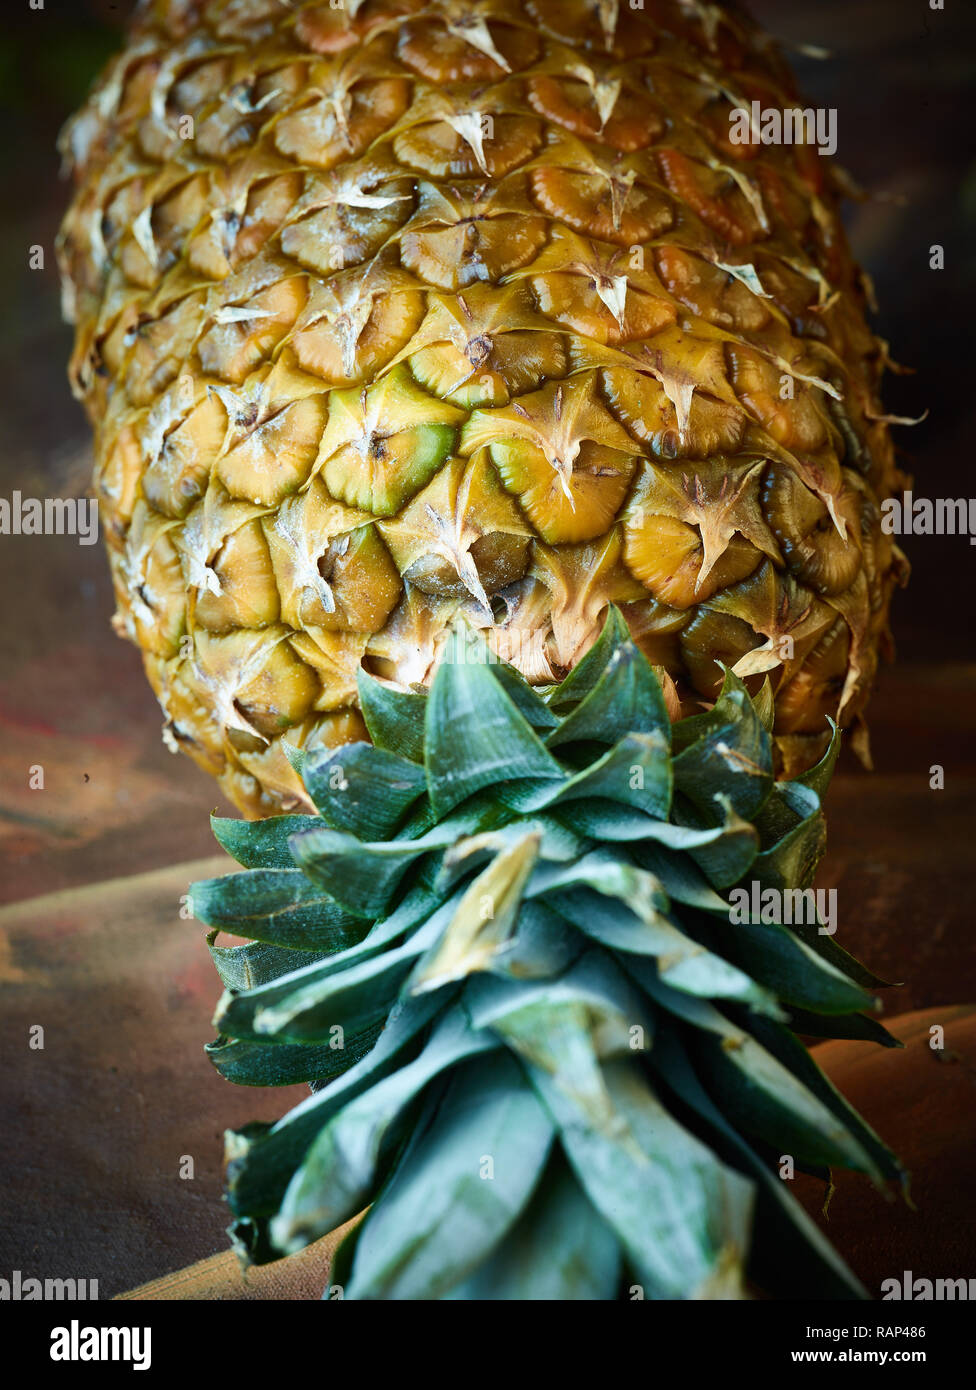 Ananas frutta still-life close up fotografia semina la pelle in dettaglio Foto Stock